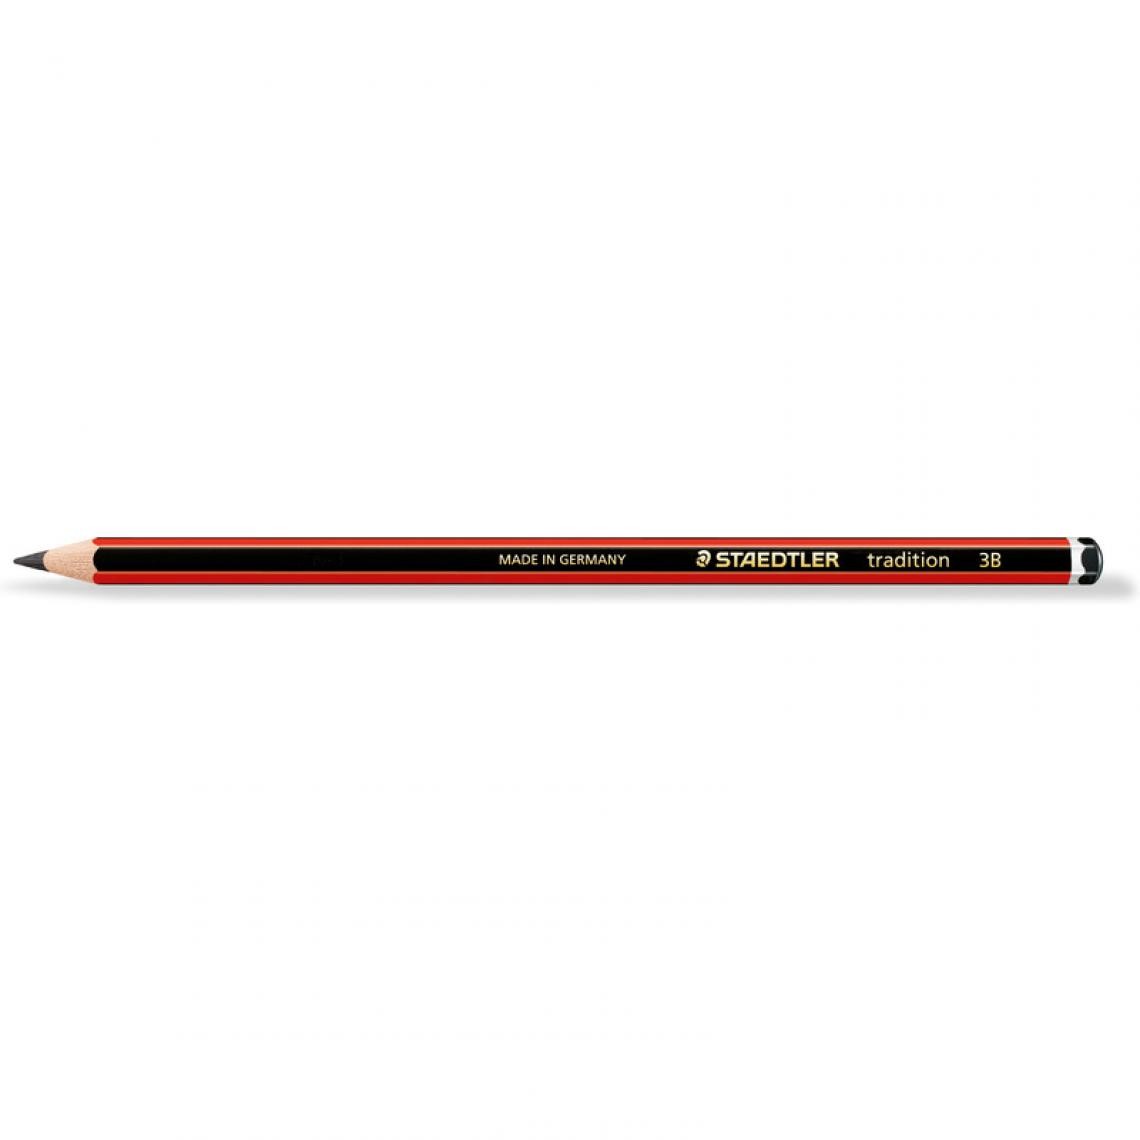 Staedtler - STAEDTLER Crayon tradition 110, degré dureté: 3B, hexagonal () - Outils et accessoires du peintre